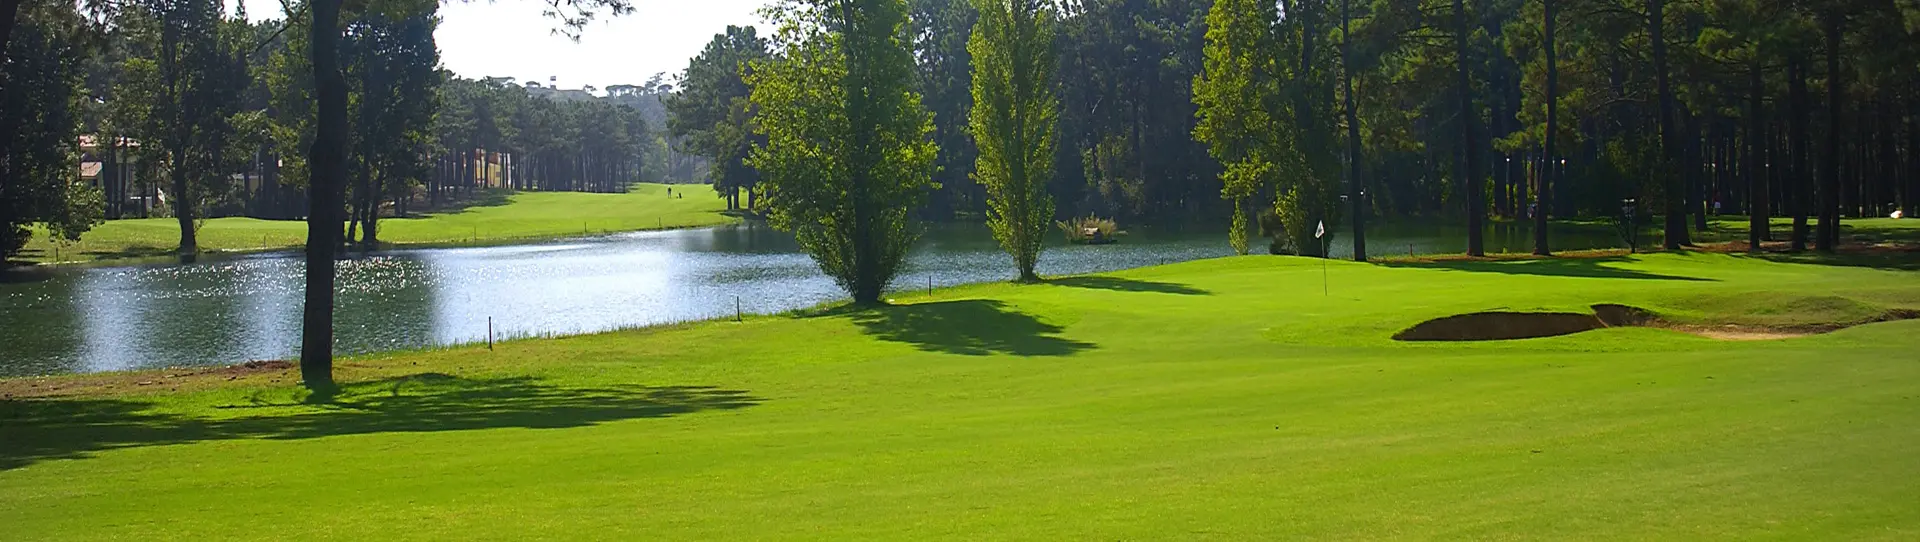 Portugal golf courses - Aroeira Pines Classic Golf Course (ex Aroeira I) - Photo 3